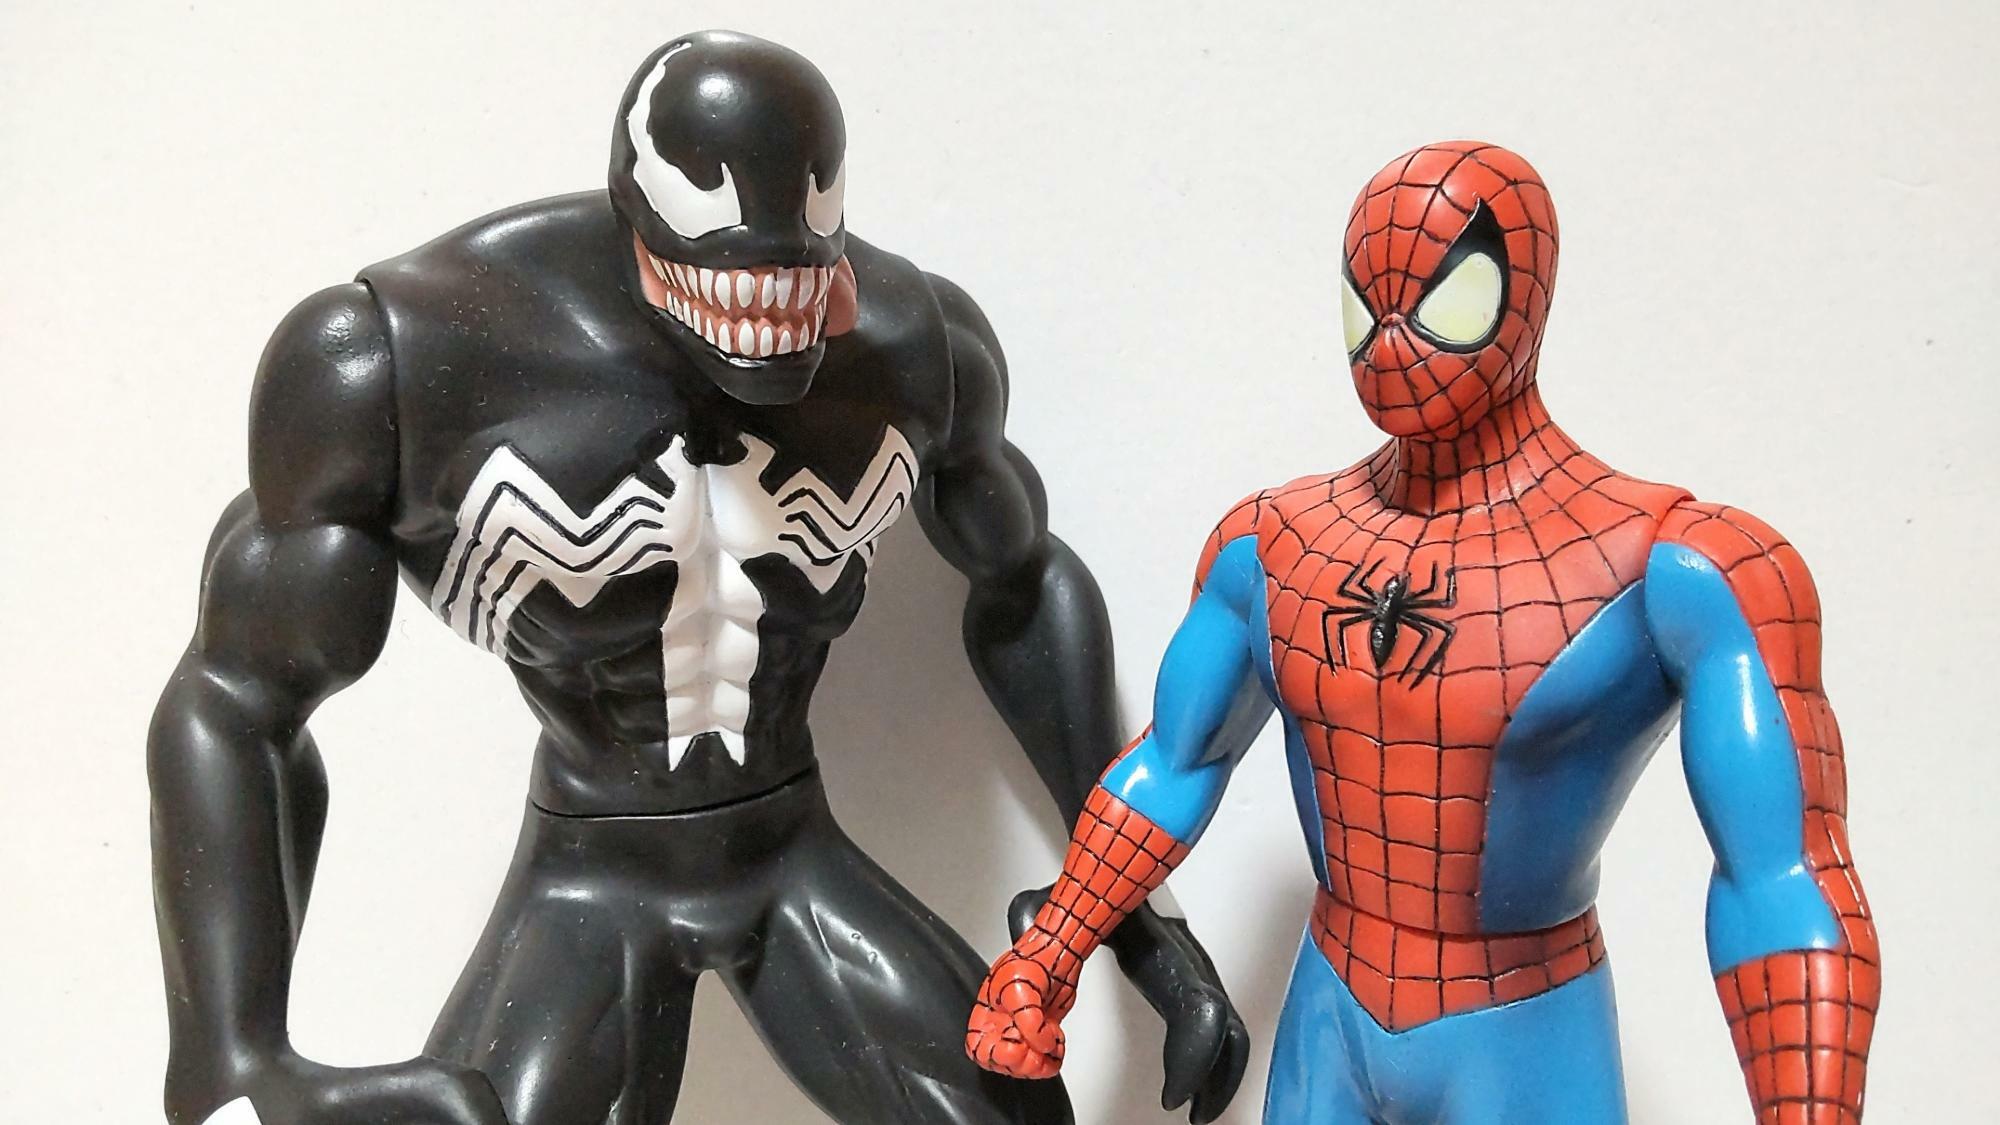 コミック版スパイダーマン（右）とその宿敵ヴェノム（左）のソフトビニール人形。近年の実写映画にはない、愛苦しささえ感じる温かな造型（筆者撮影）。